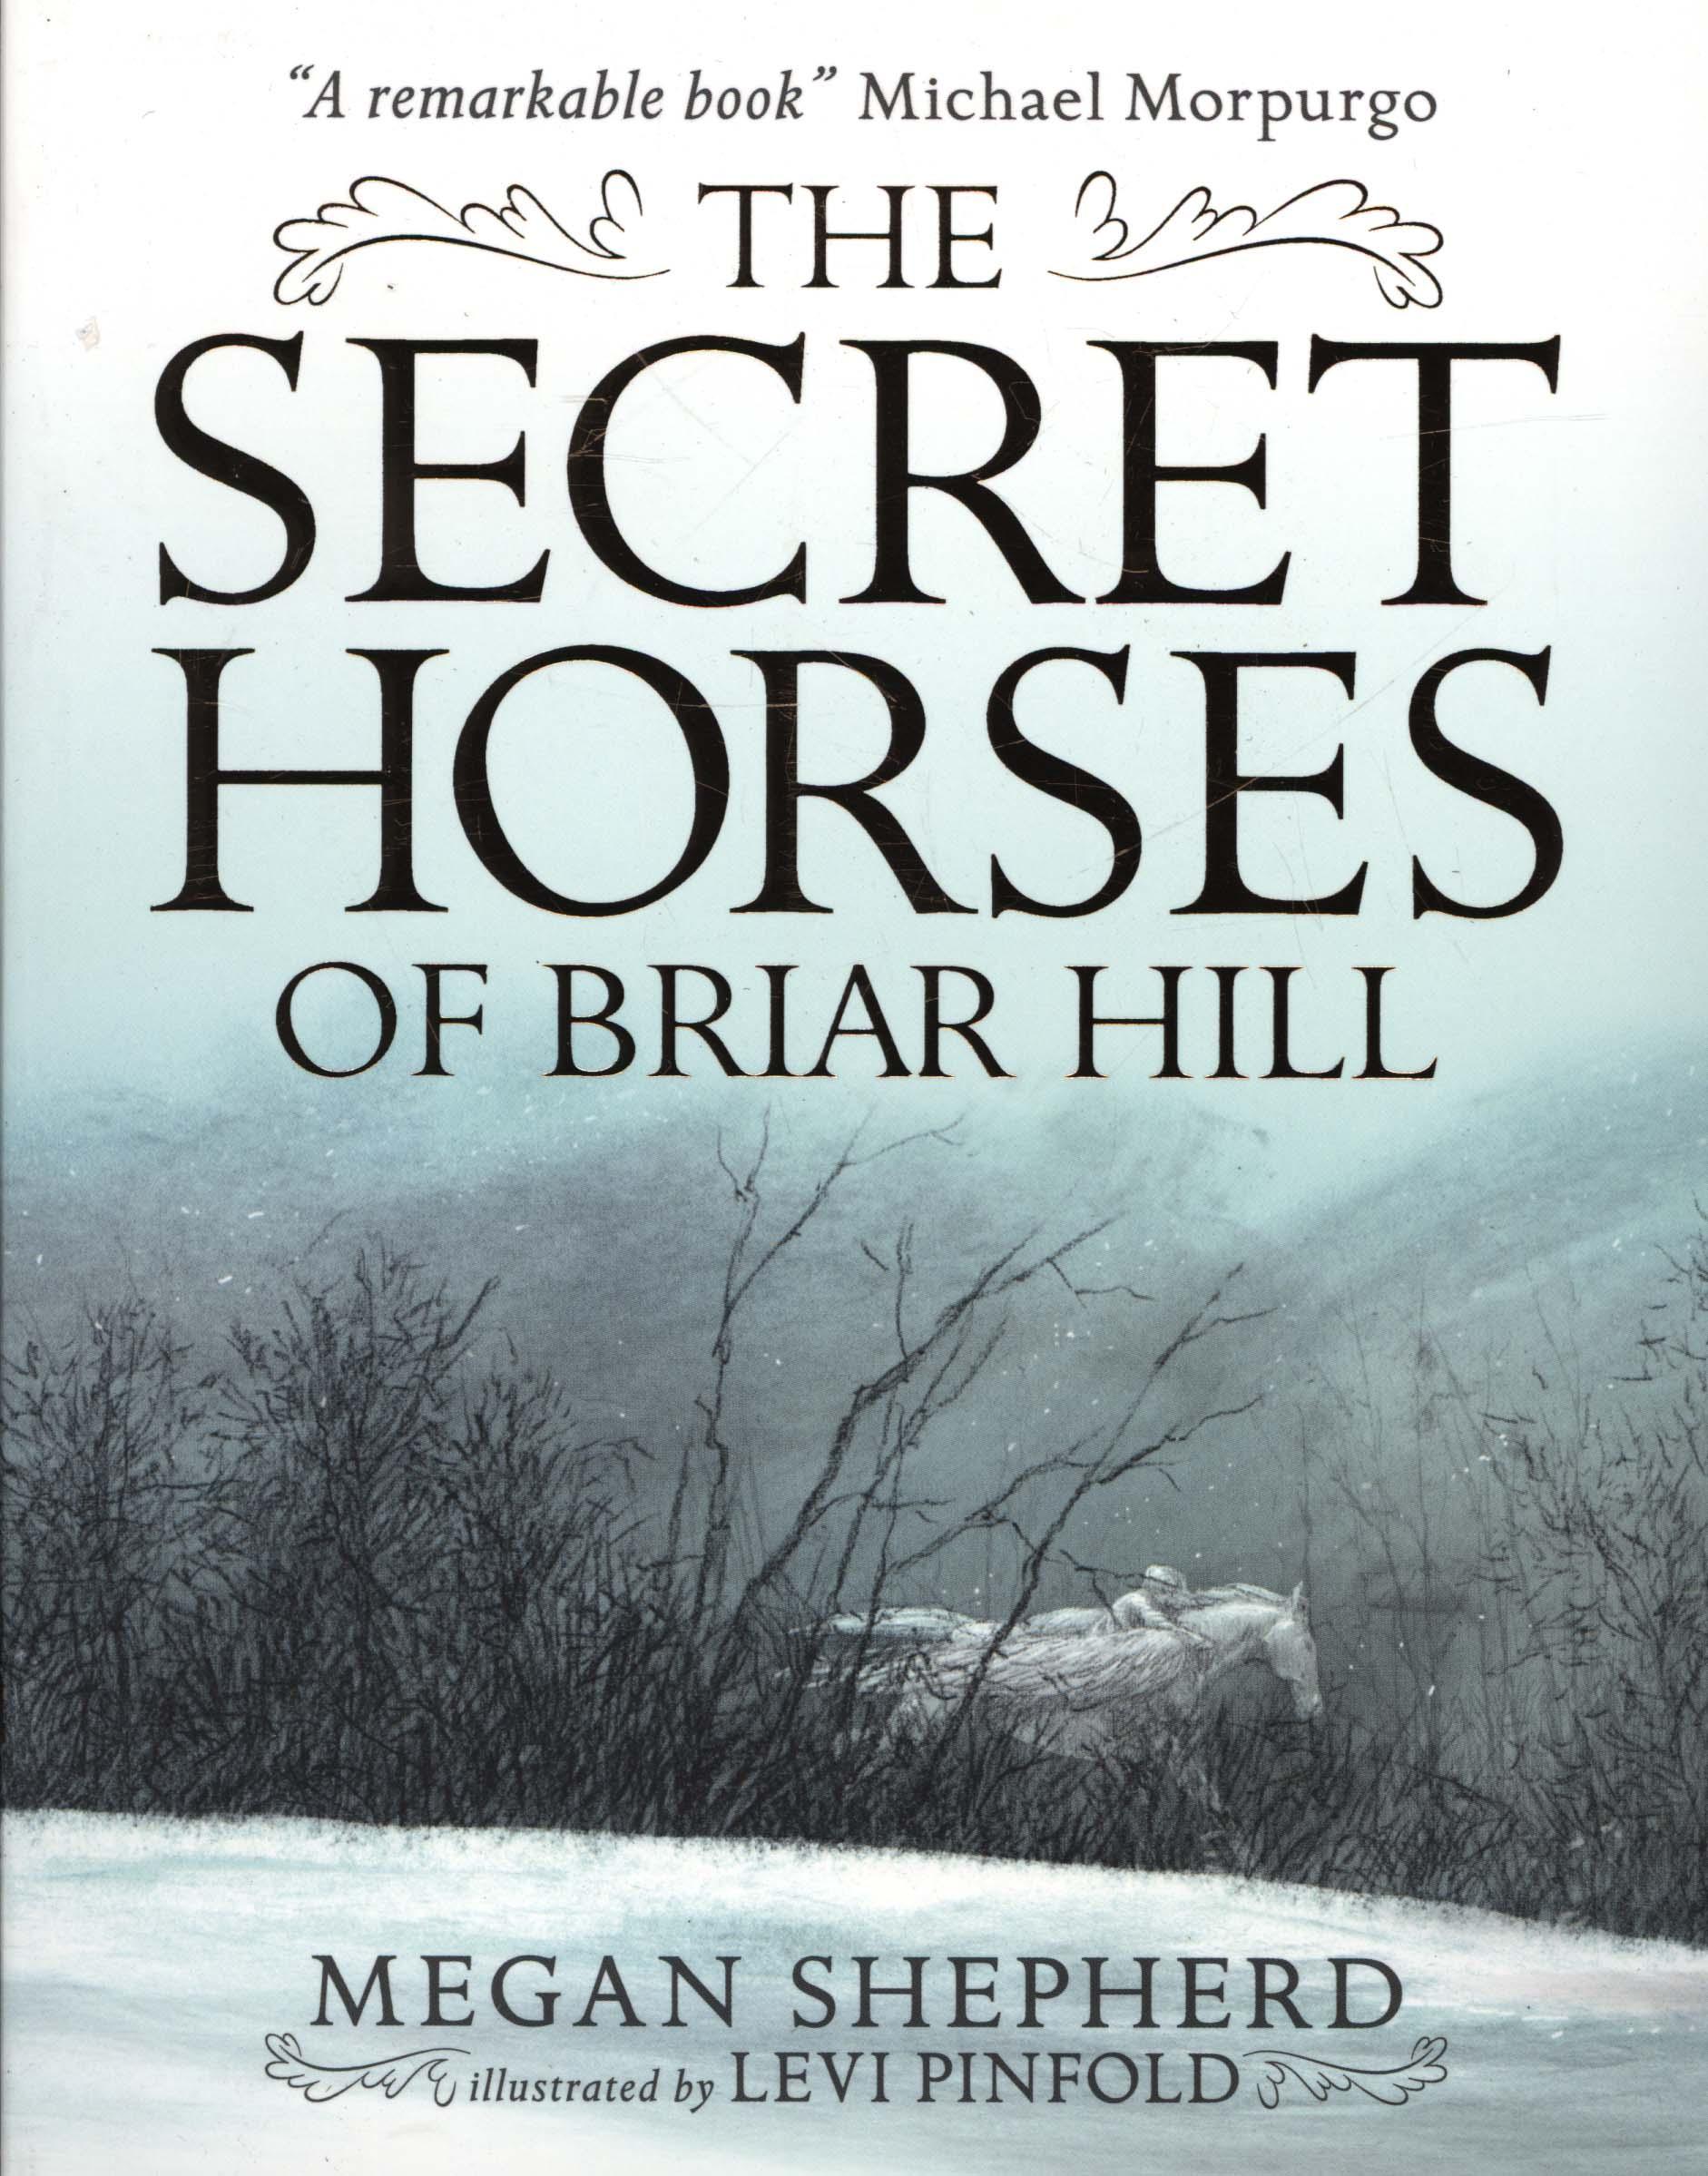 Secret Horses of Briar Hill